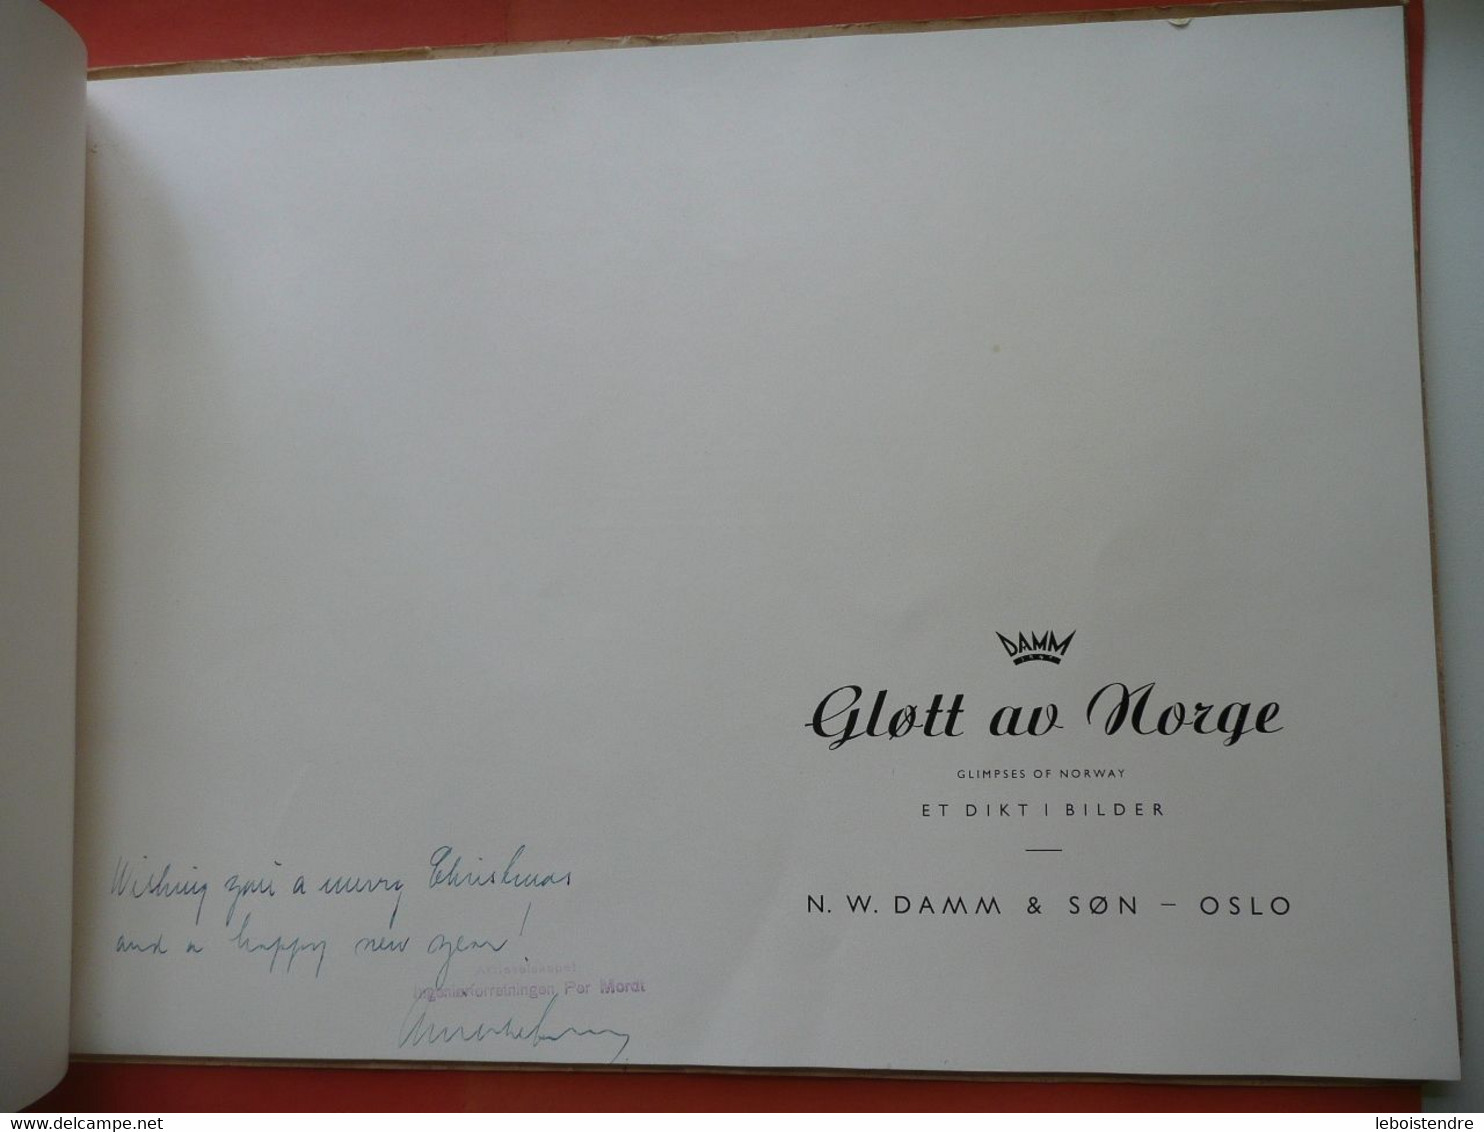 GLOTT AV NORGE  GLIMPSES OF NORWAY ET DIKTI BILDER N. W. DAMM & SON OLSO ARNE DAMM NON DATE ~1948 PHOTOGRAPHIES - Langues Scandinaves